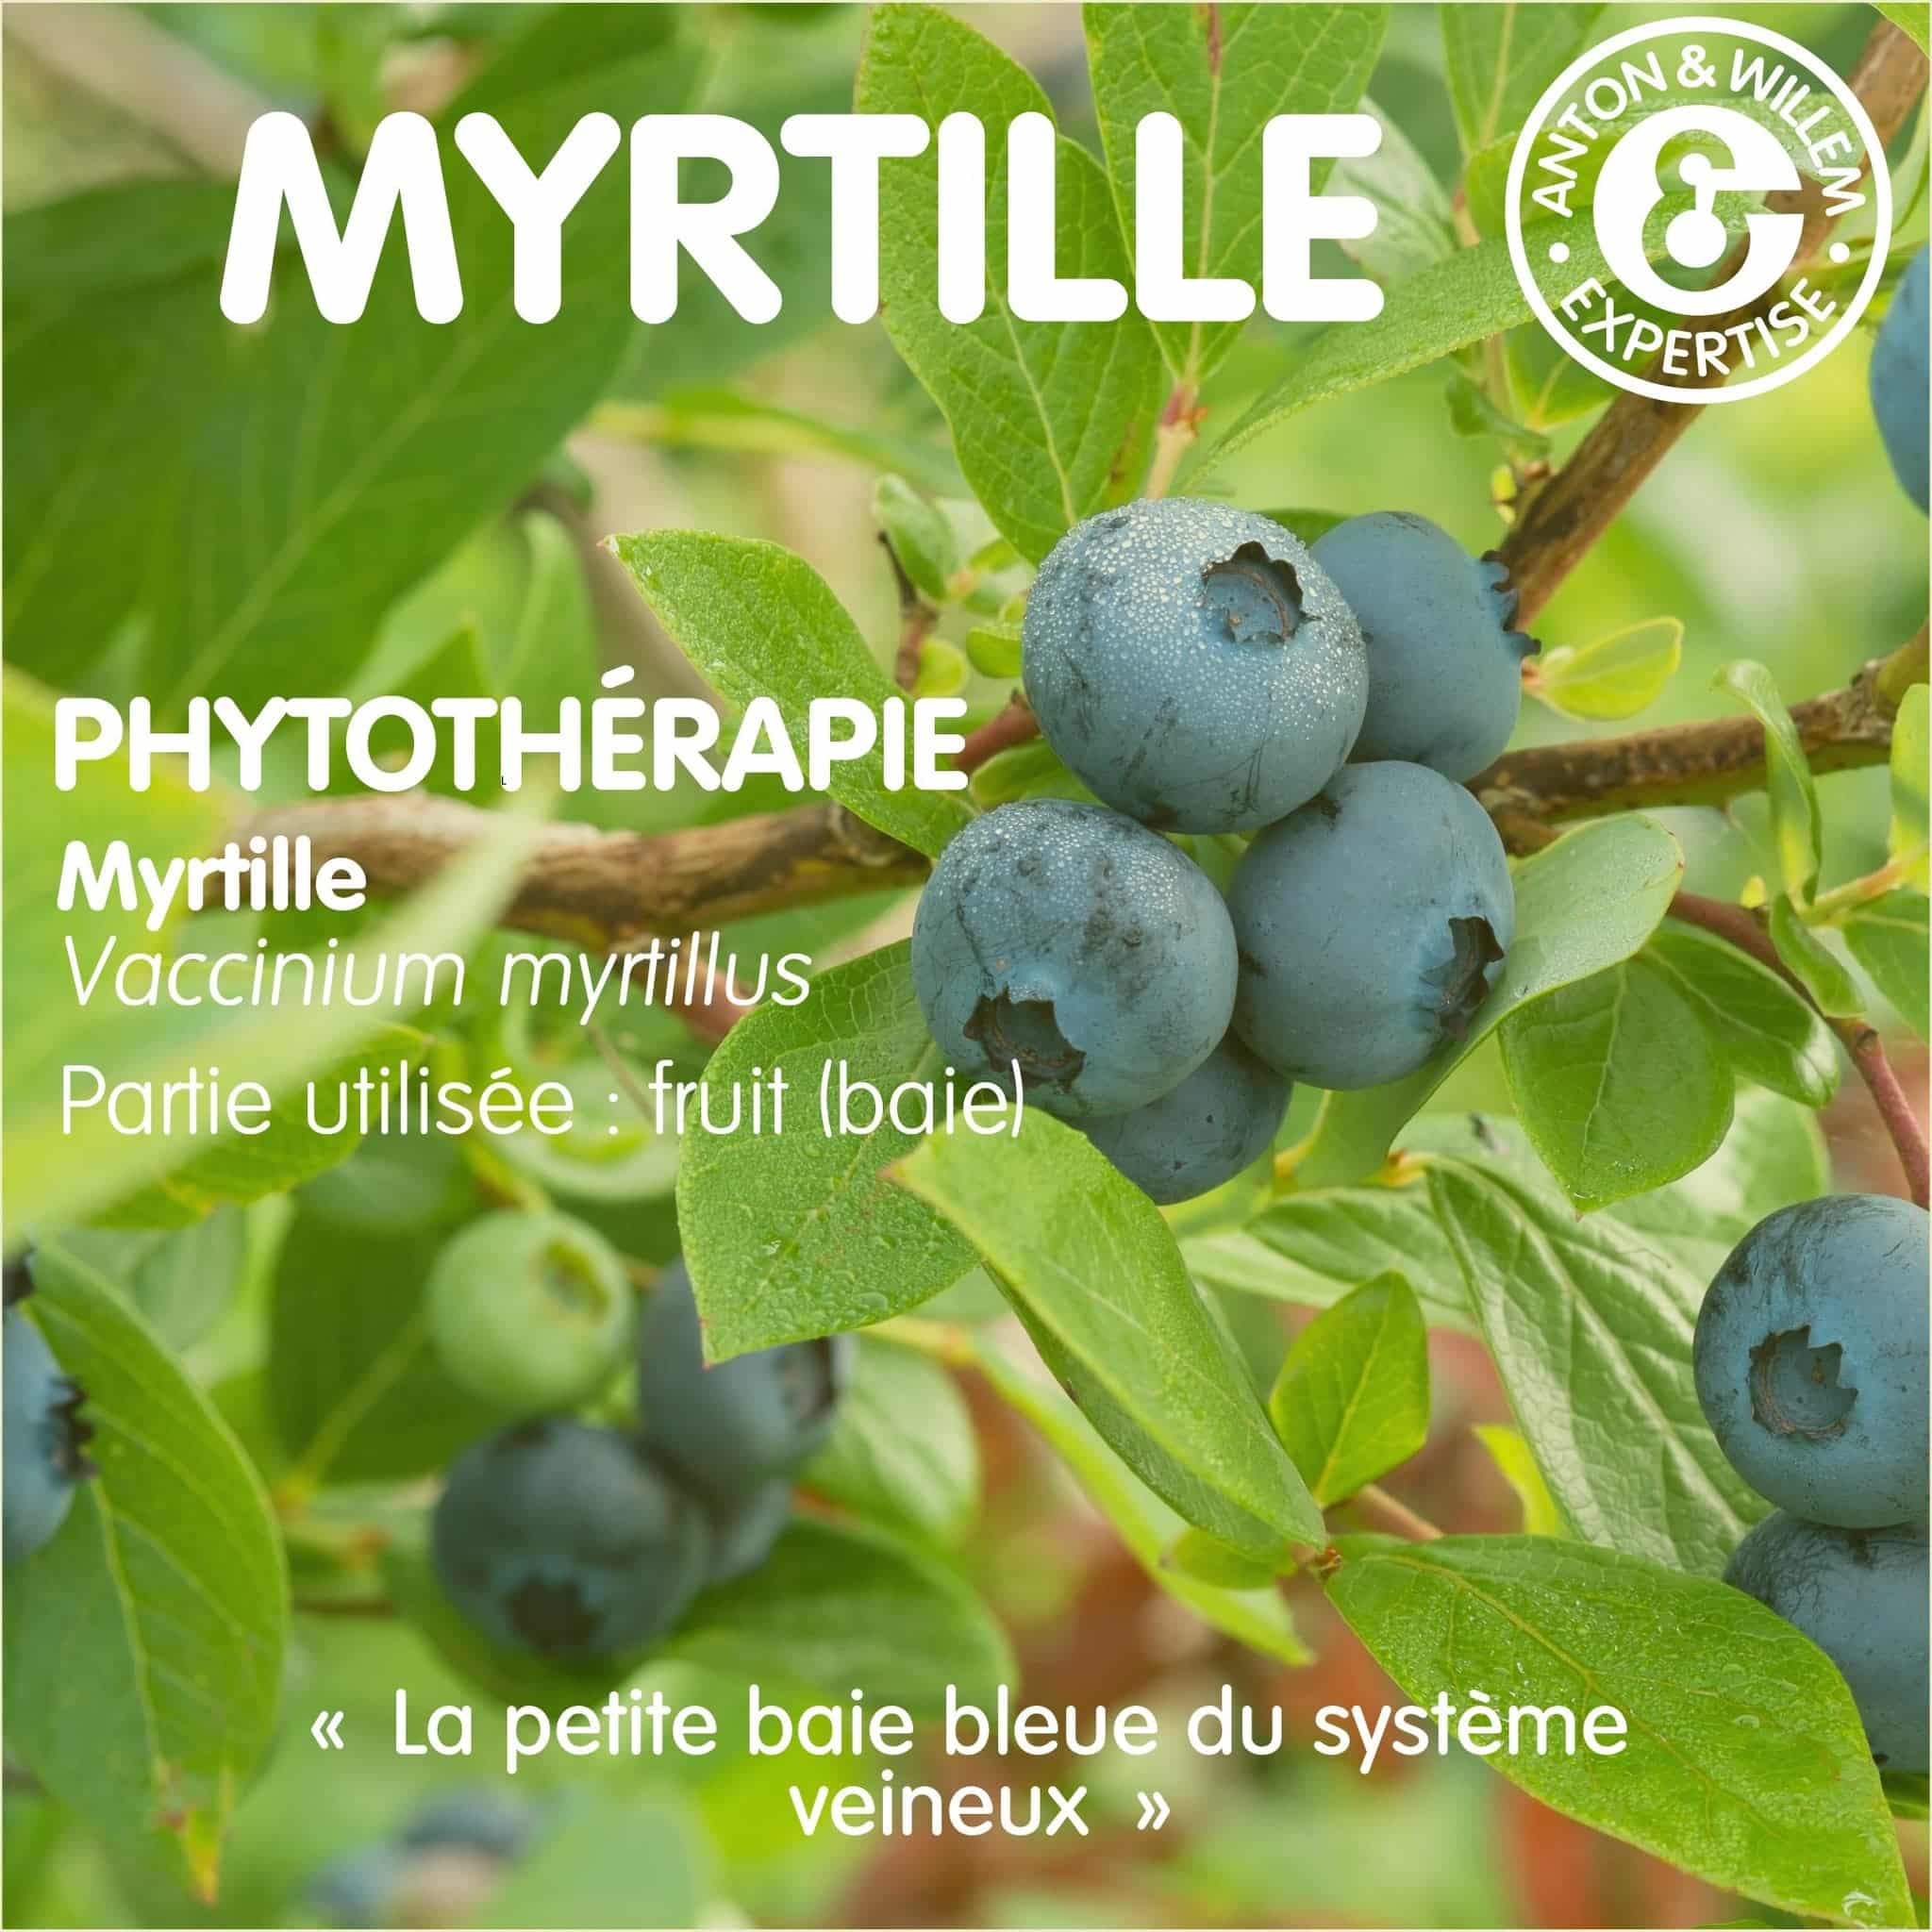 La myrtille en phytothérapie